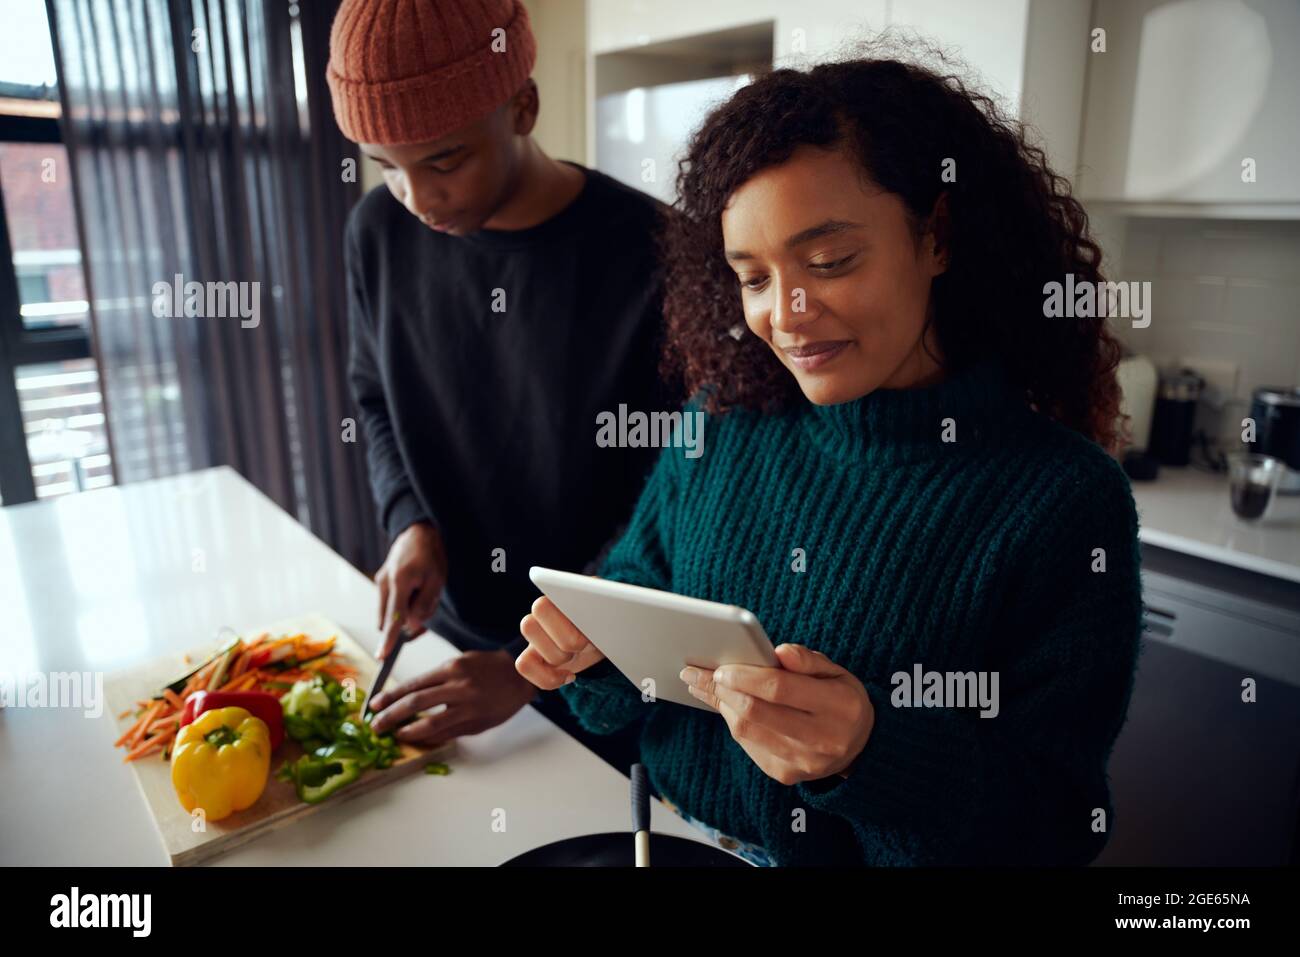 Joven pareja mixta de carreras cocinando comida en la cocina y usando una tableta. Mujer mirando la tableta para la receta del alimento. Fotografías de alta calidad Foto de stock